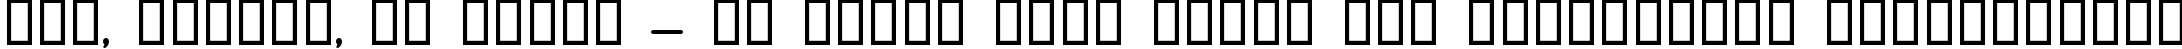 Пример написания шрифтом Jerusalem Bold текста на украинском